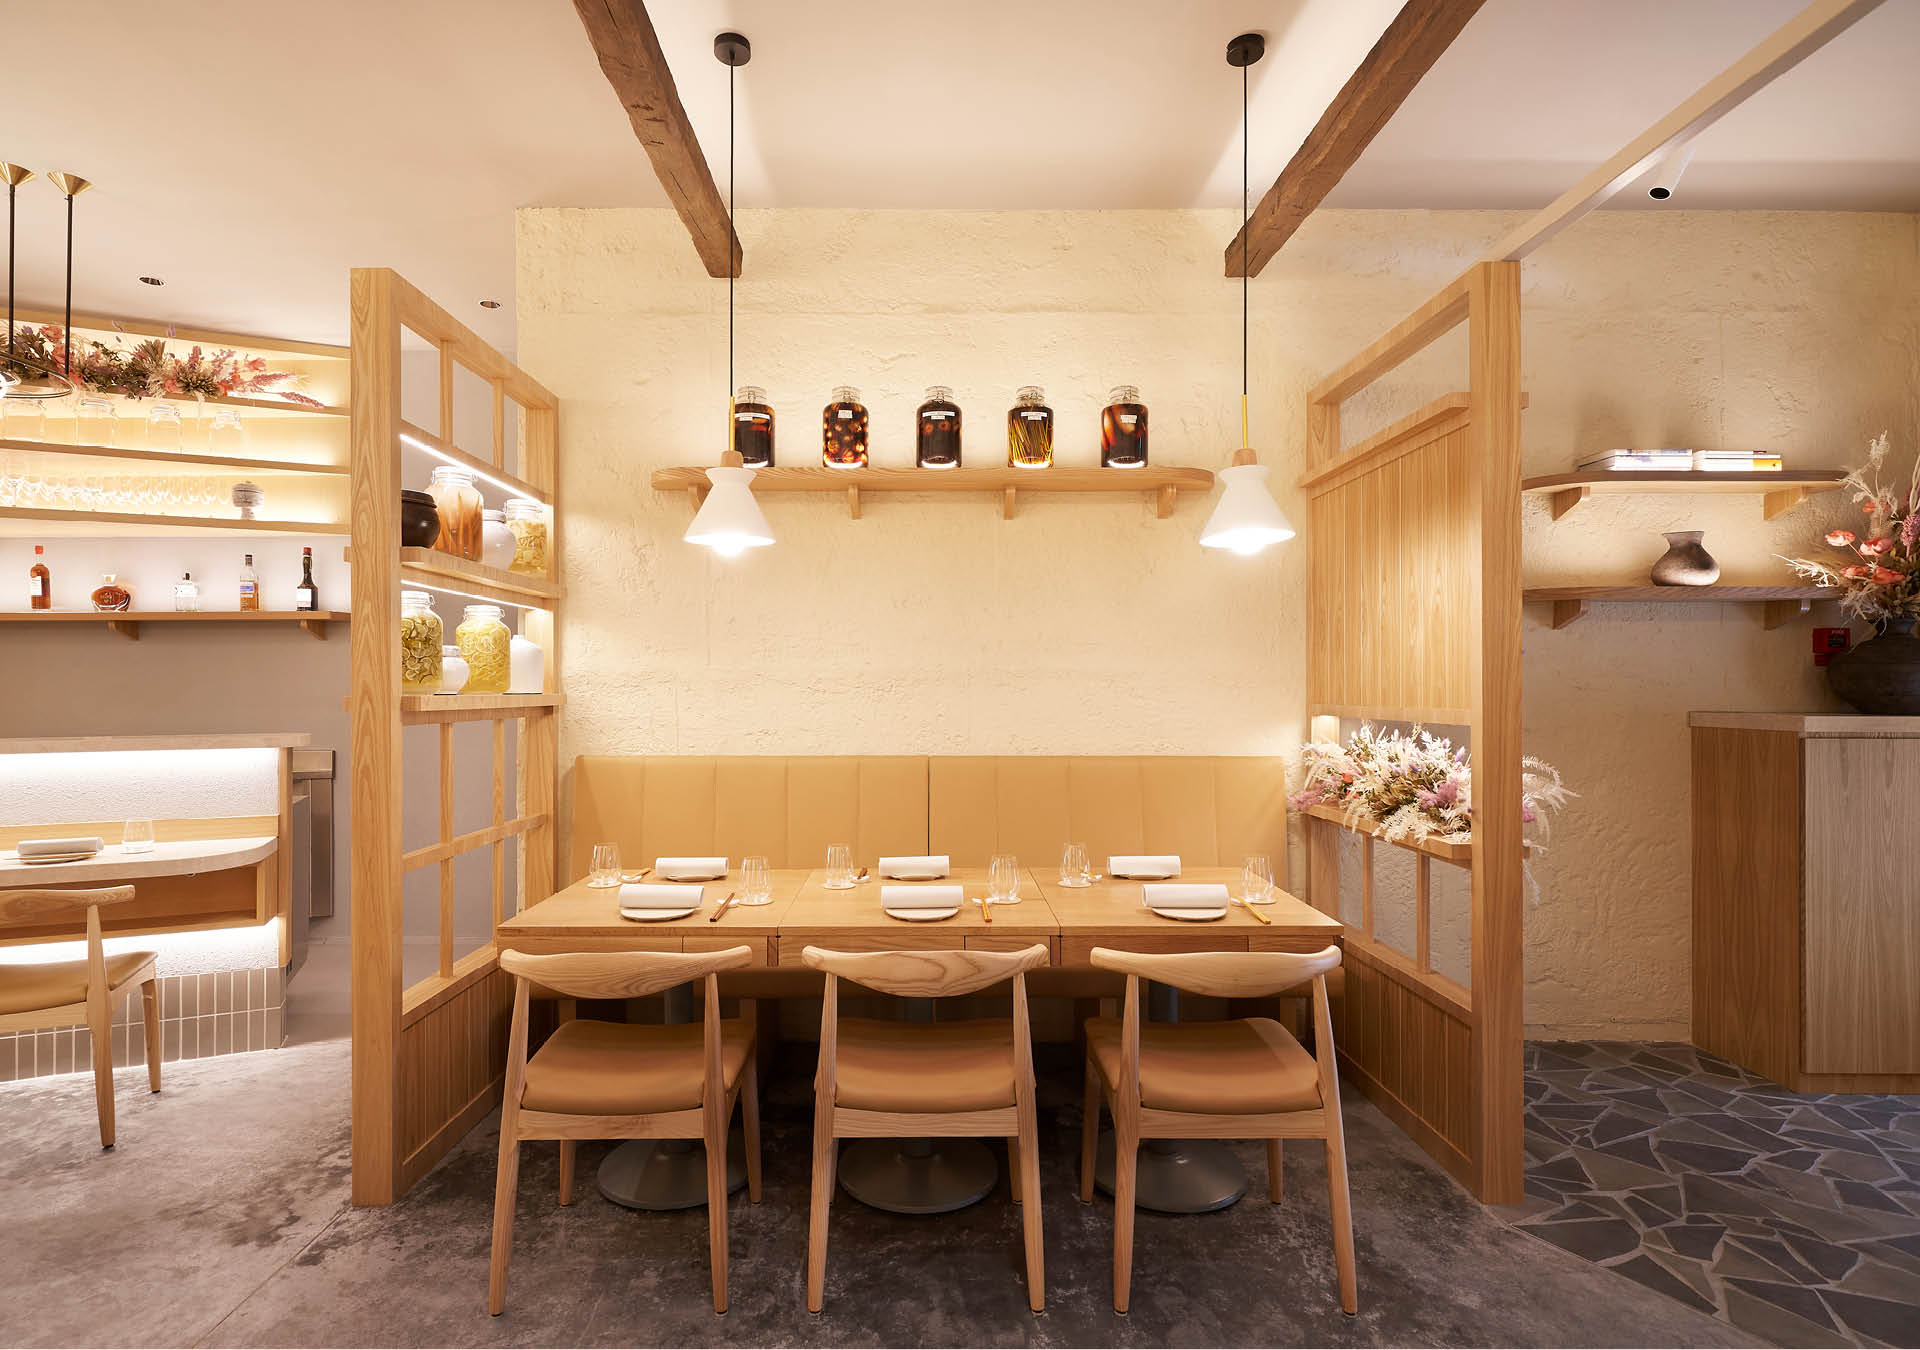 Wood-accented interiors at Nae:um restaurant, Singapore.